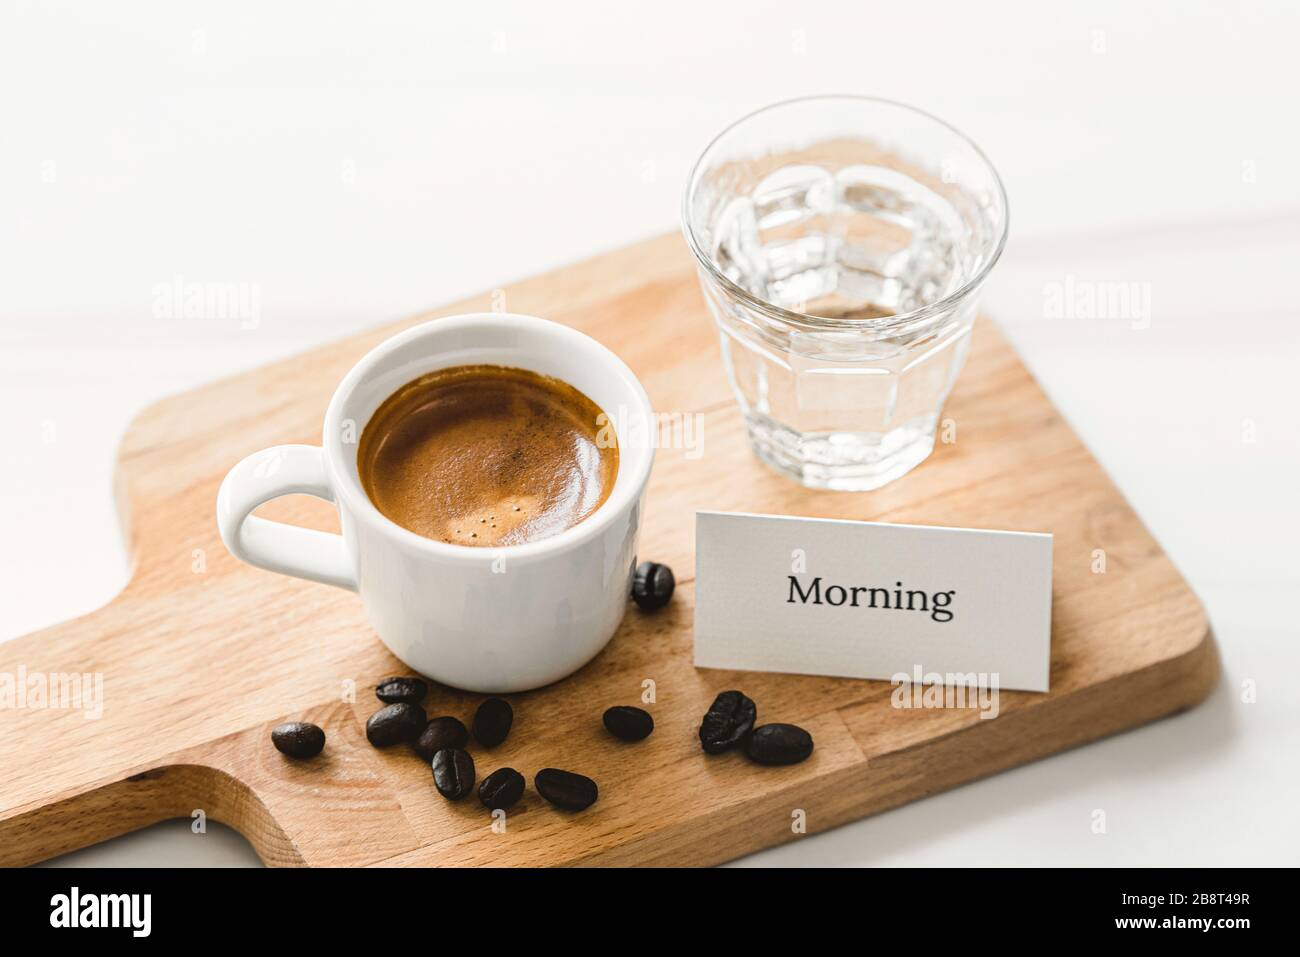 Una tazza di caffè espresso appena preparato viene servita per colazione su un piatto di legno con un biglietto di auguri per la buona mattina Foto Stock